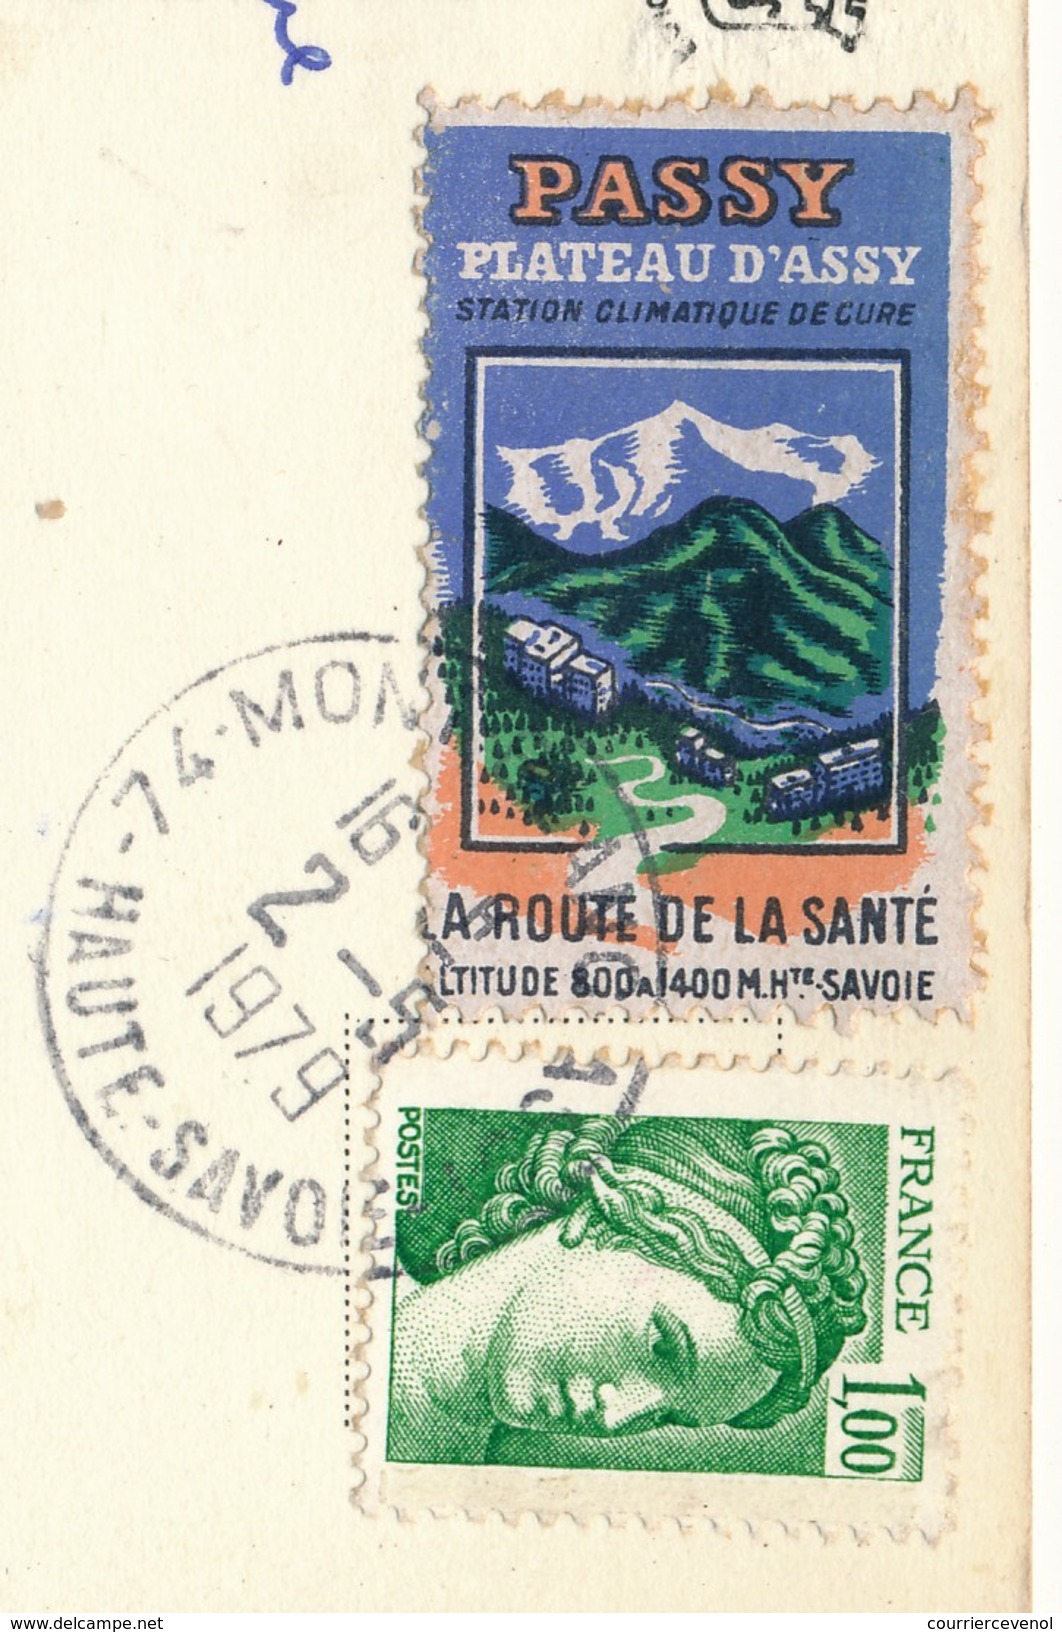 FRANCE => Vignette "Passy, Plateau D'Assy - La Route De La Santé" Sur Carte Postale 1979 - Lettres & Documents